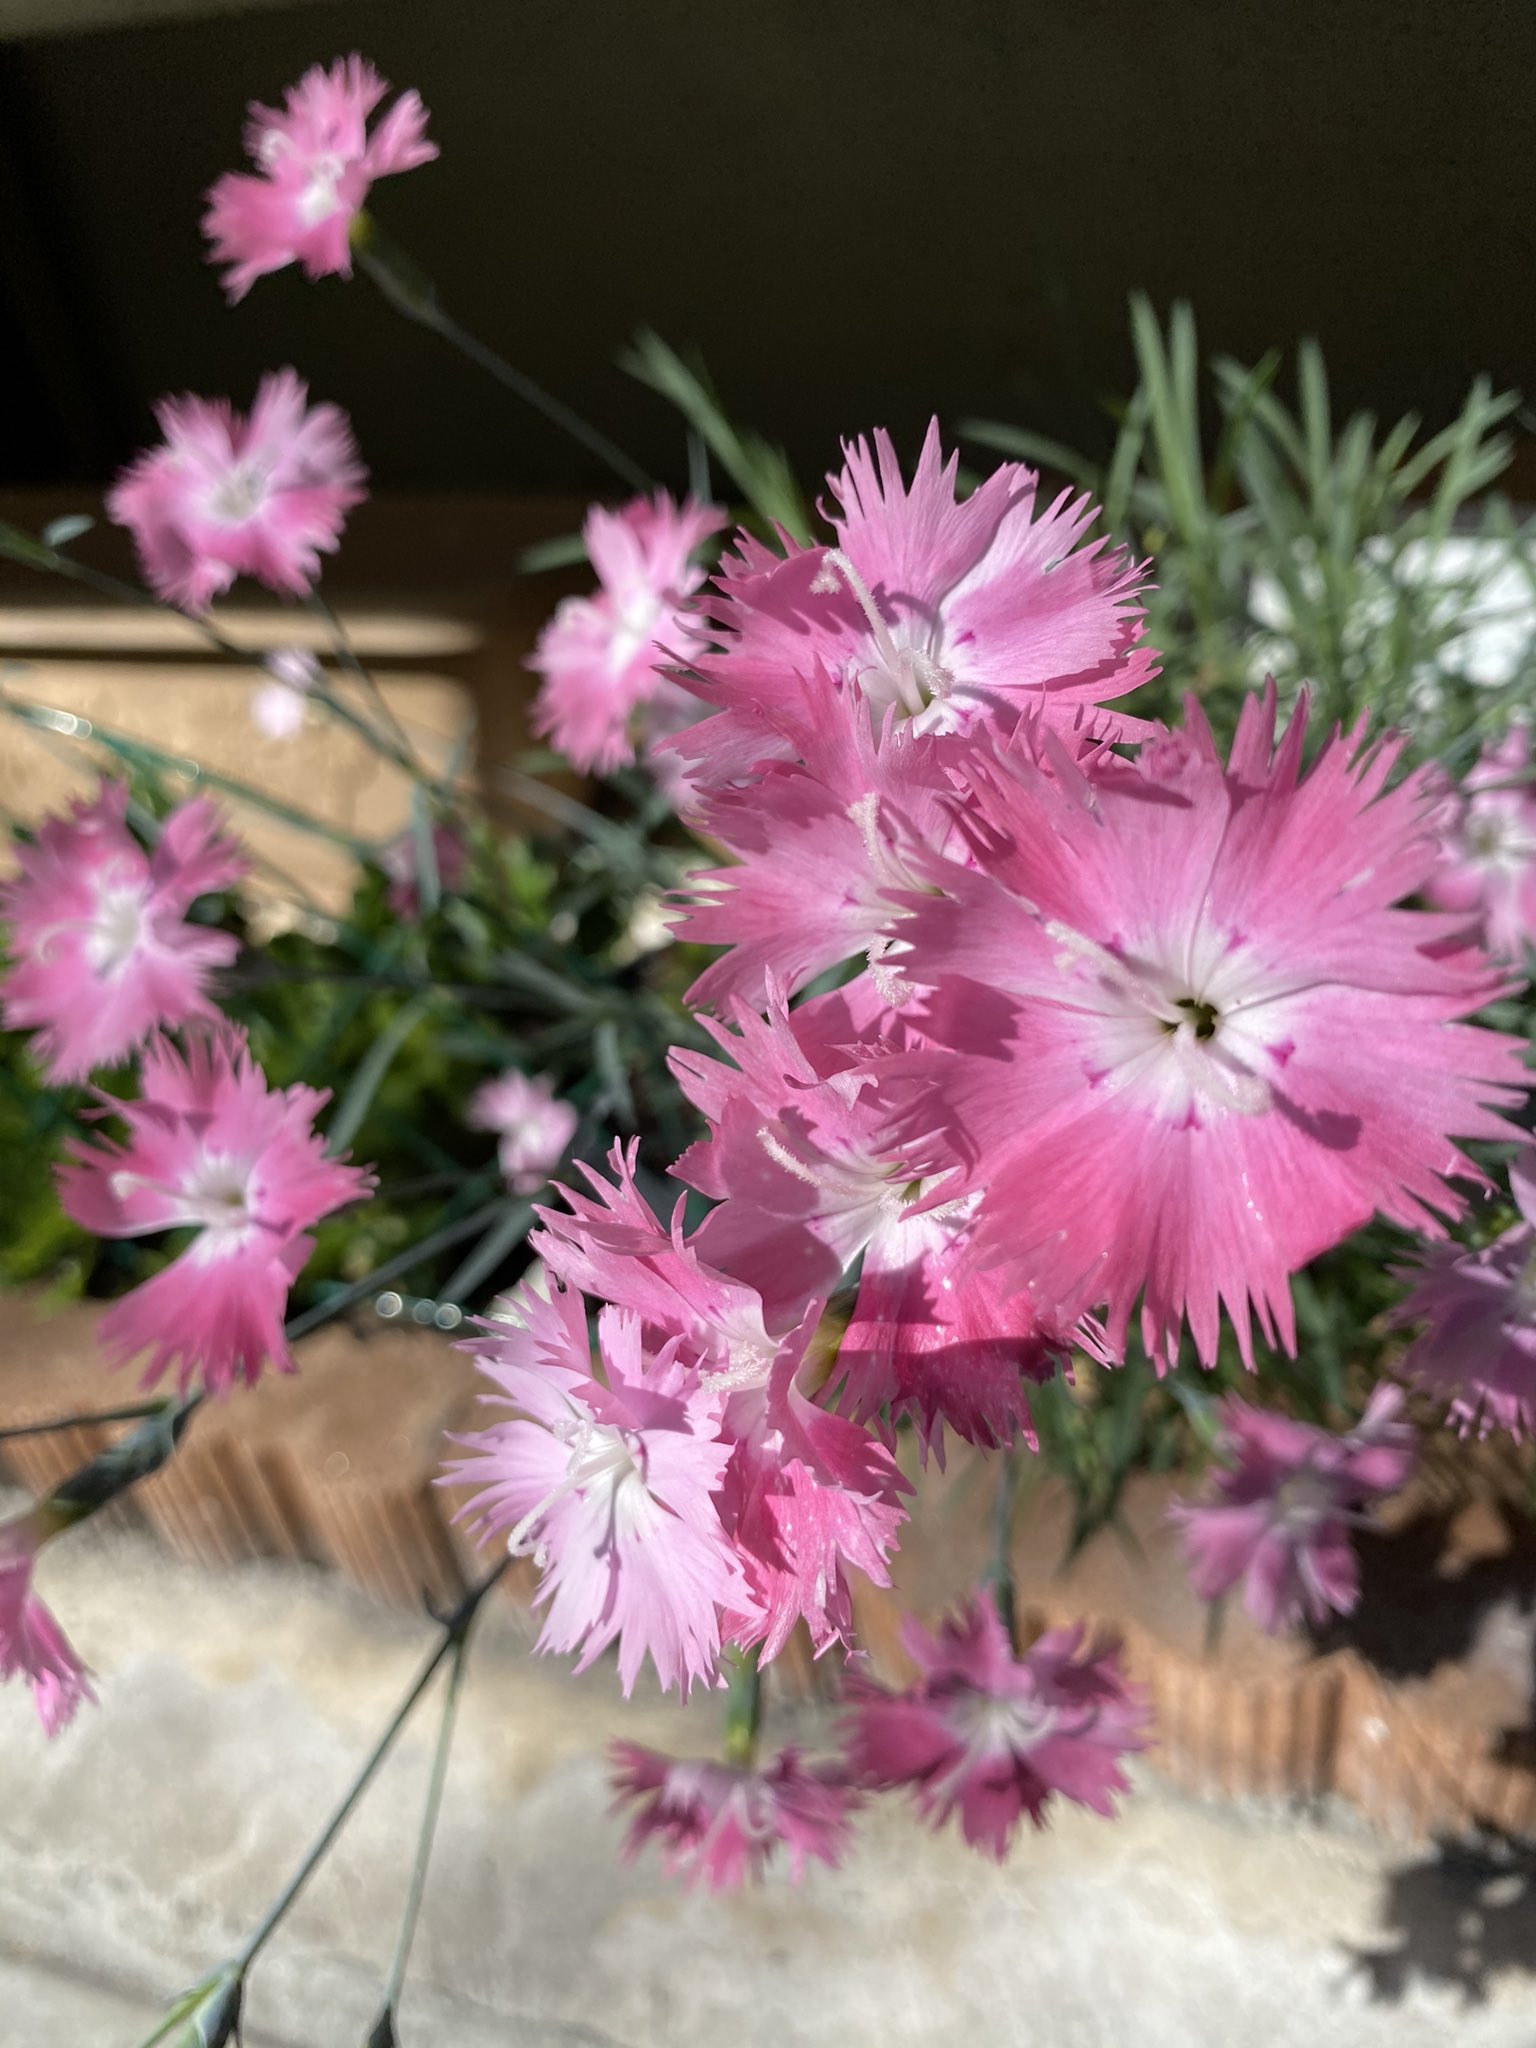 تويتر Ichiro Mizuki على تويتر ウォーキング途中で見つけた花 今日は快晴 可愛い花を見つけました アブチロン チロルアンランプ 花言葉 尊敬 憶測 真実は一つ 良い便り さまざまな愛 恵まれた環境 などなど ナデシコ 花言葉 無邪気